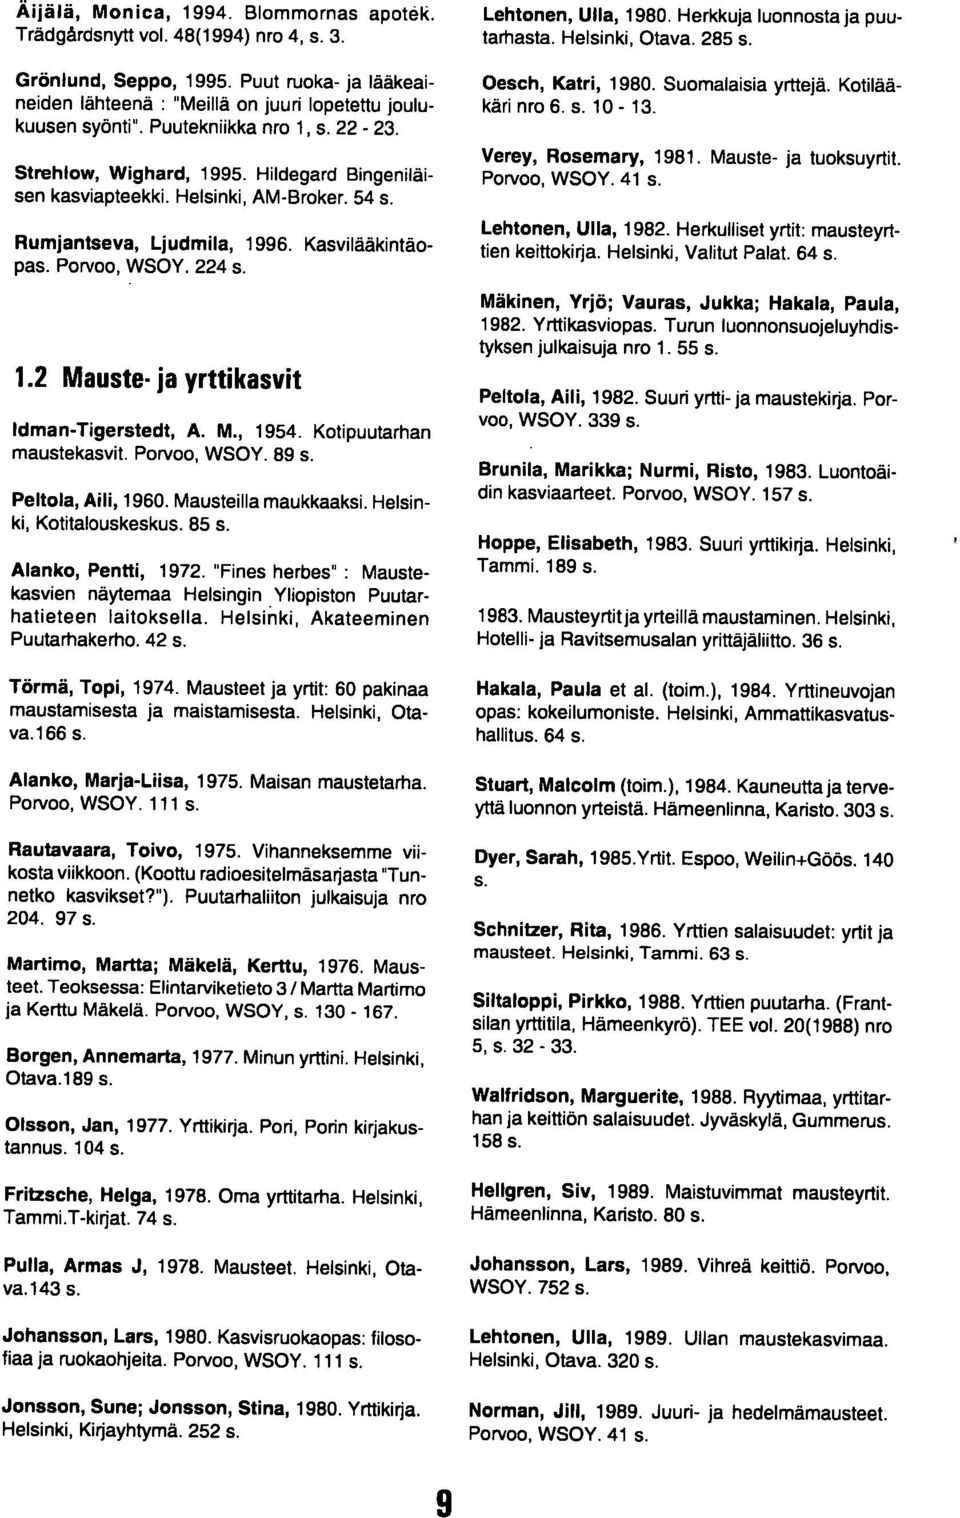 M., 1954. Kotipuutarhan maustekasvit. Porvoo, WSOY. 89 s. Peltola, Aili, 1960. Mausteilla maukkaaksi. Helsinki, Kotitalouskeskus. 85 s. Alanko, Pentti, 1972.